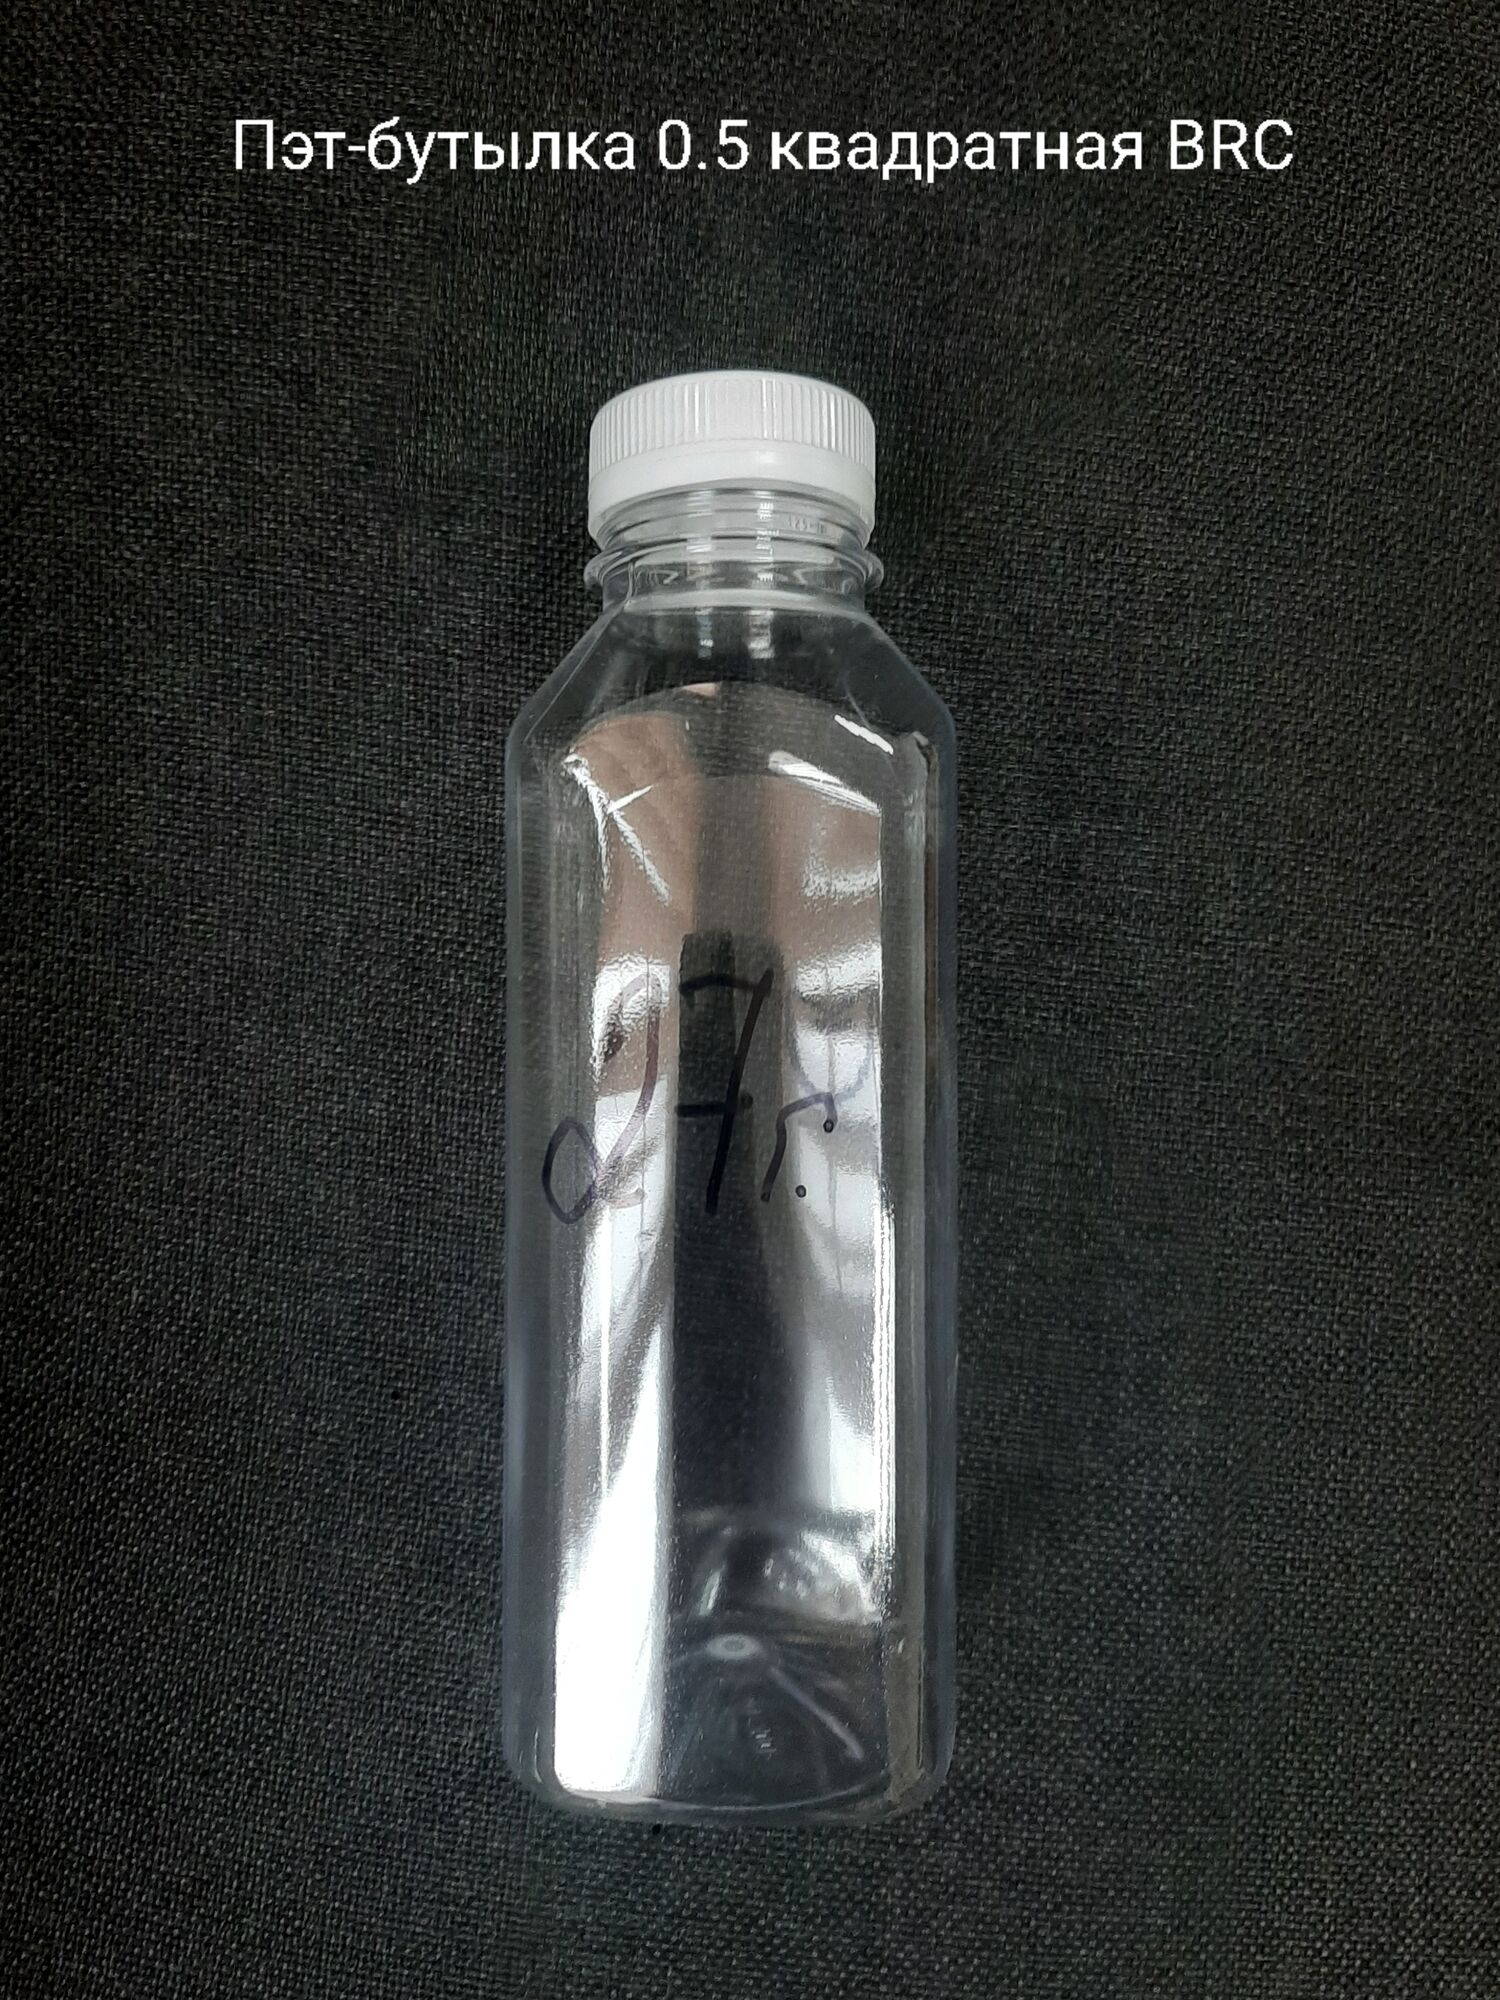 Пэт-бутылка 0,5 квадратная BRC, бесцветная (200 шт в упаковке) вес 22 гр., 25.5 гр.